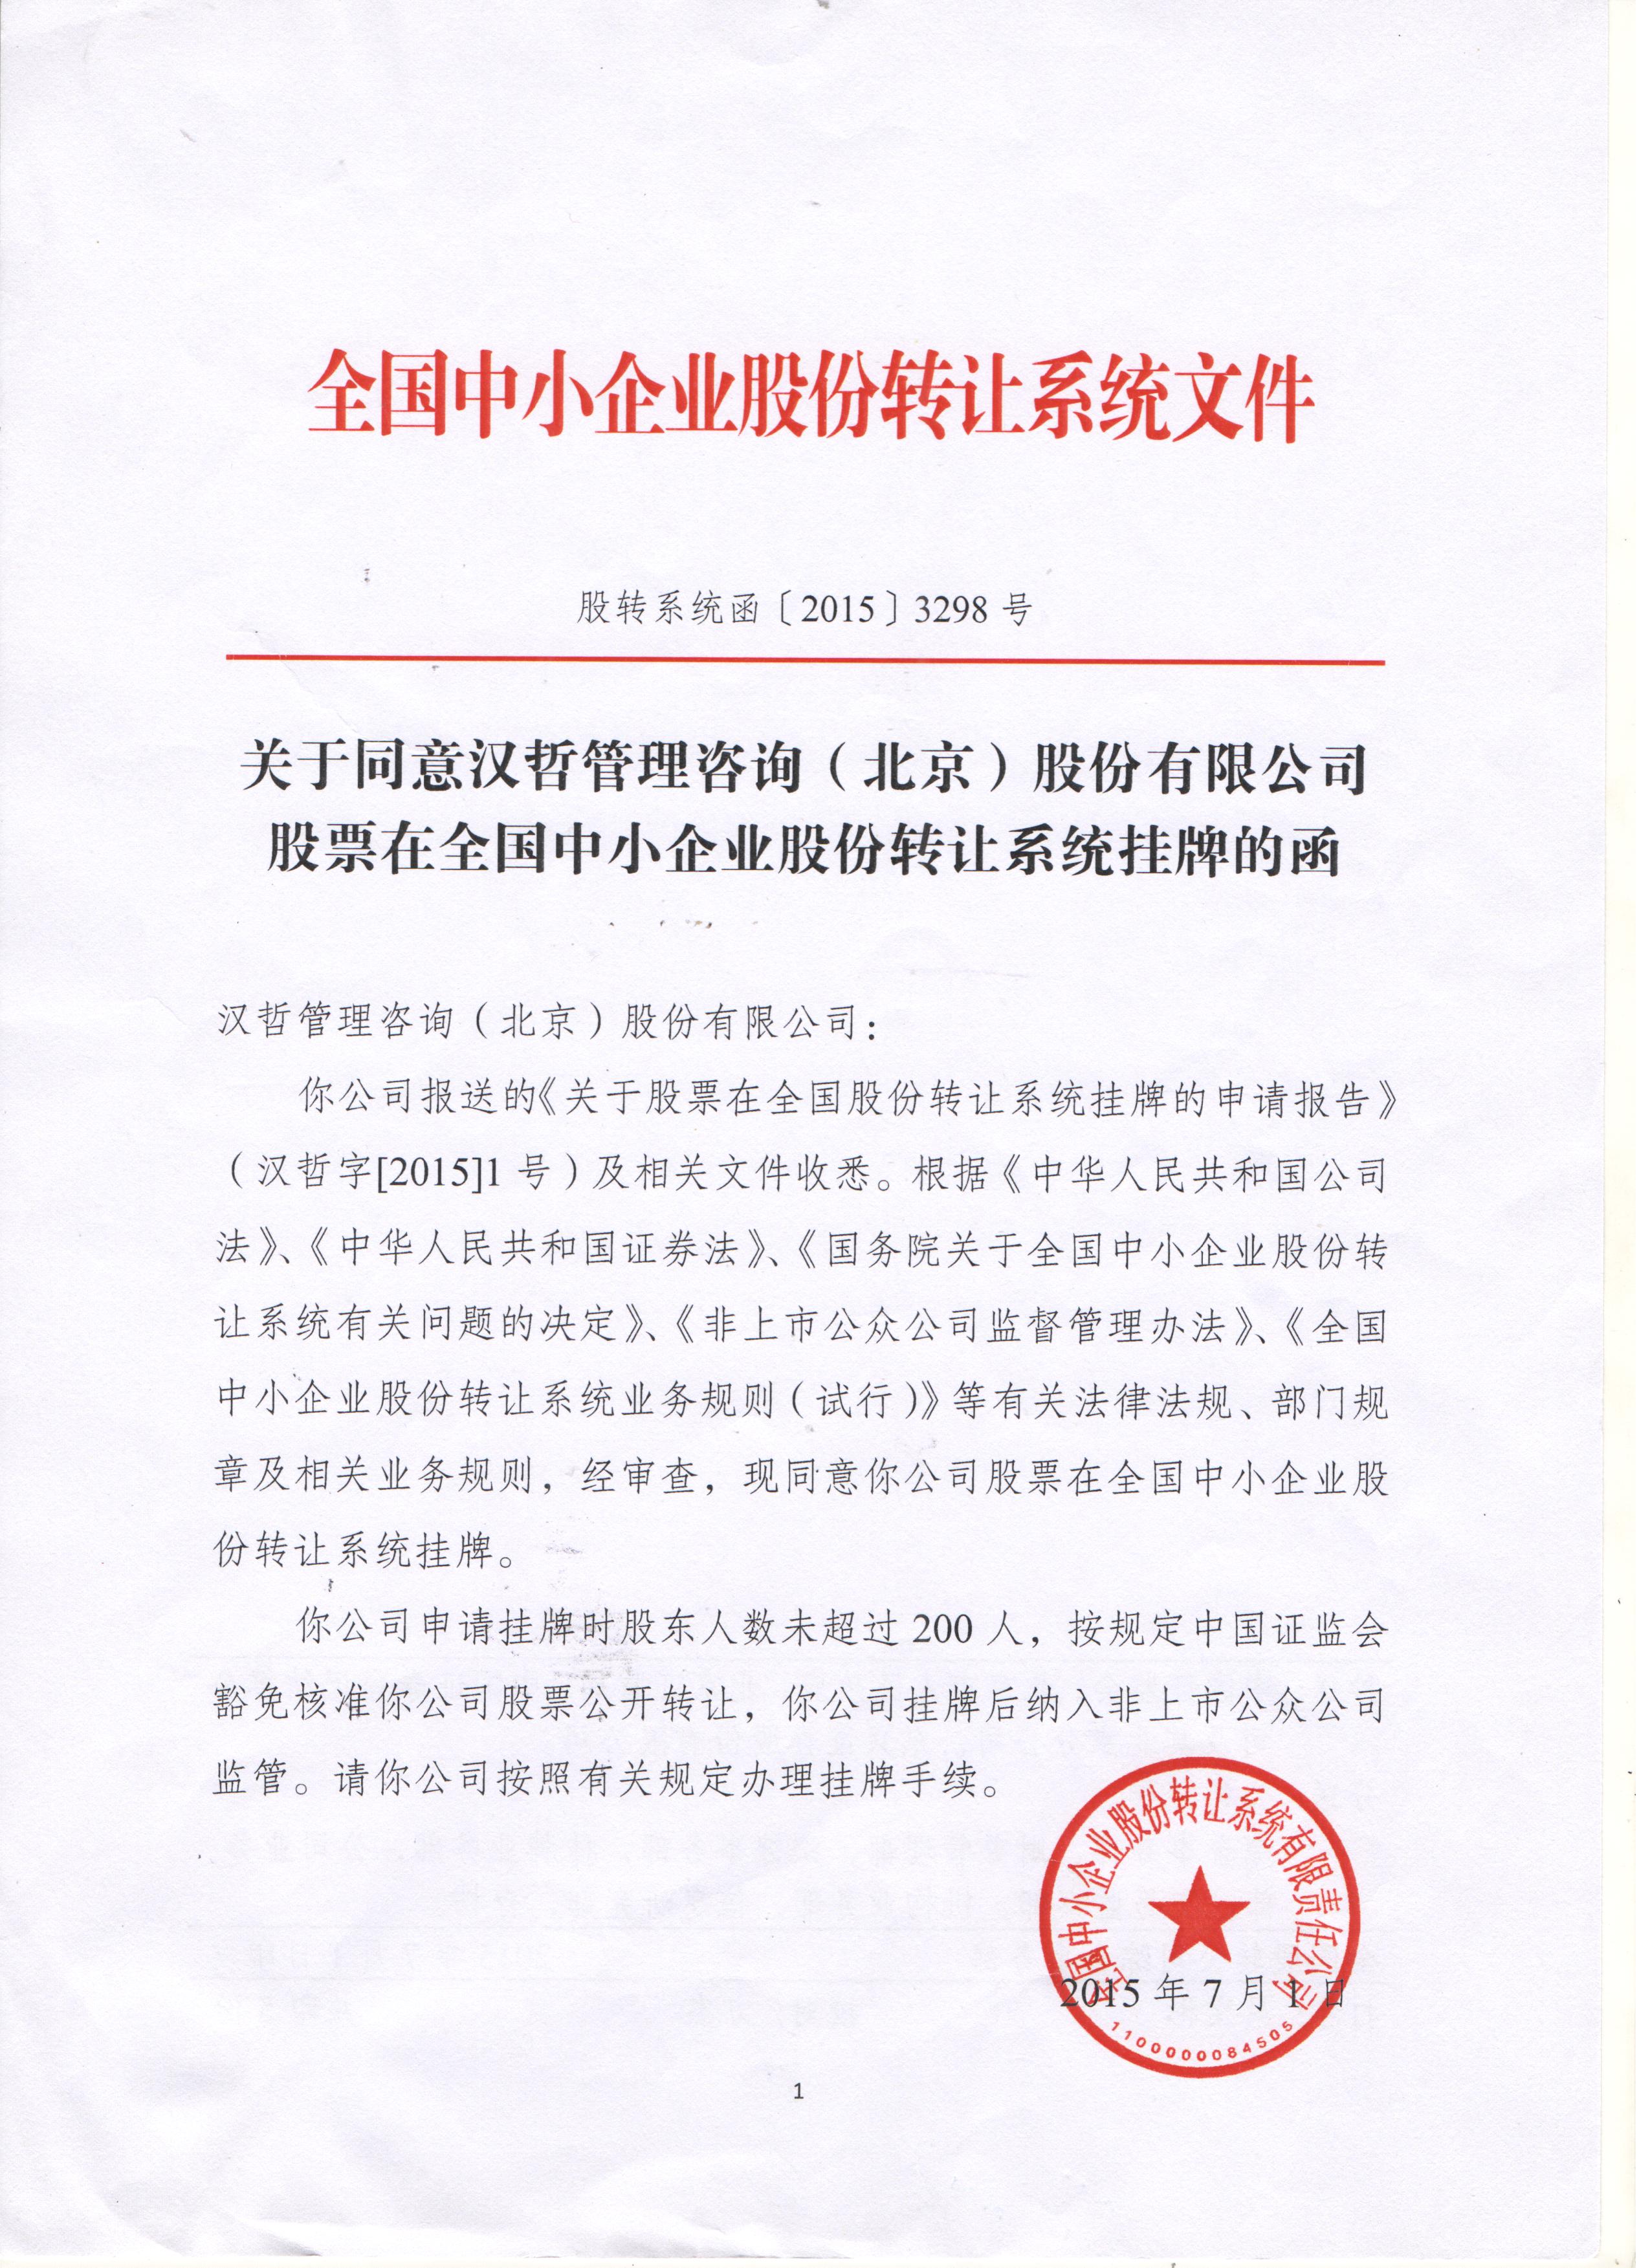 汉哲管理咨询（北京）股份有限公司正式挂牌新三板及开始交易